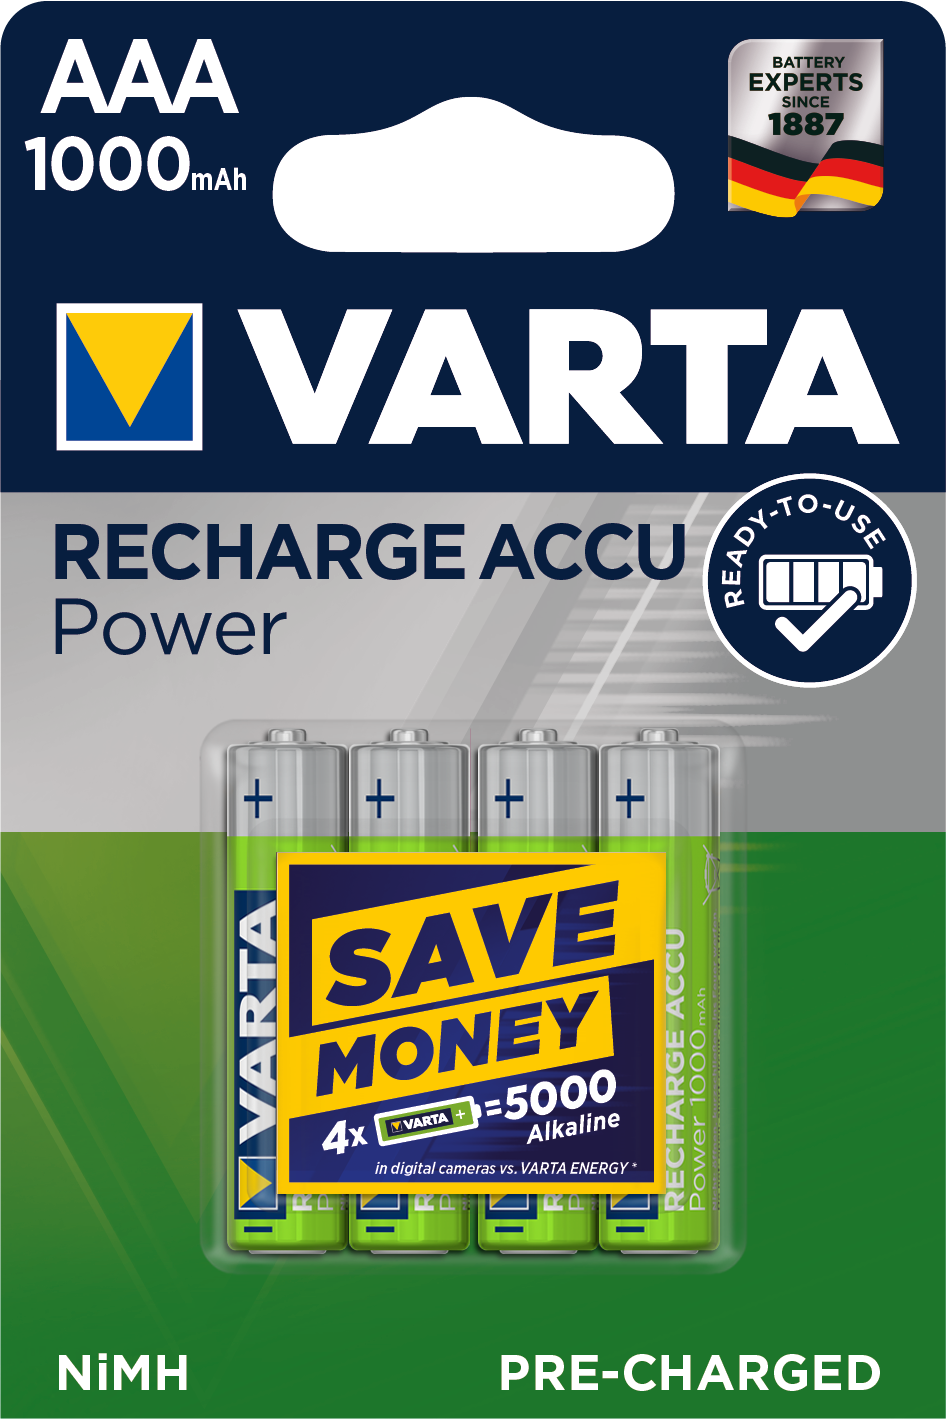 Recharge Accu Power Baterie von Varta.